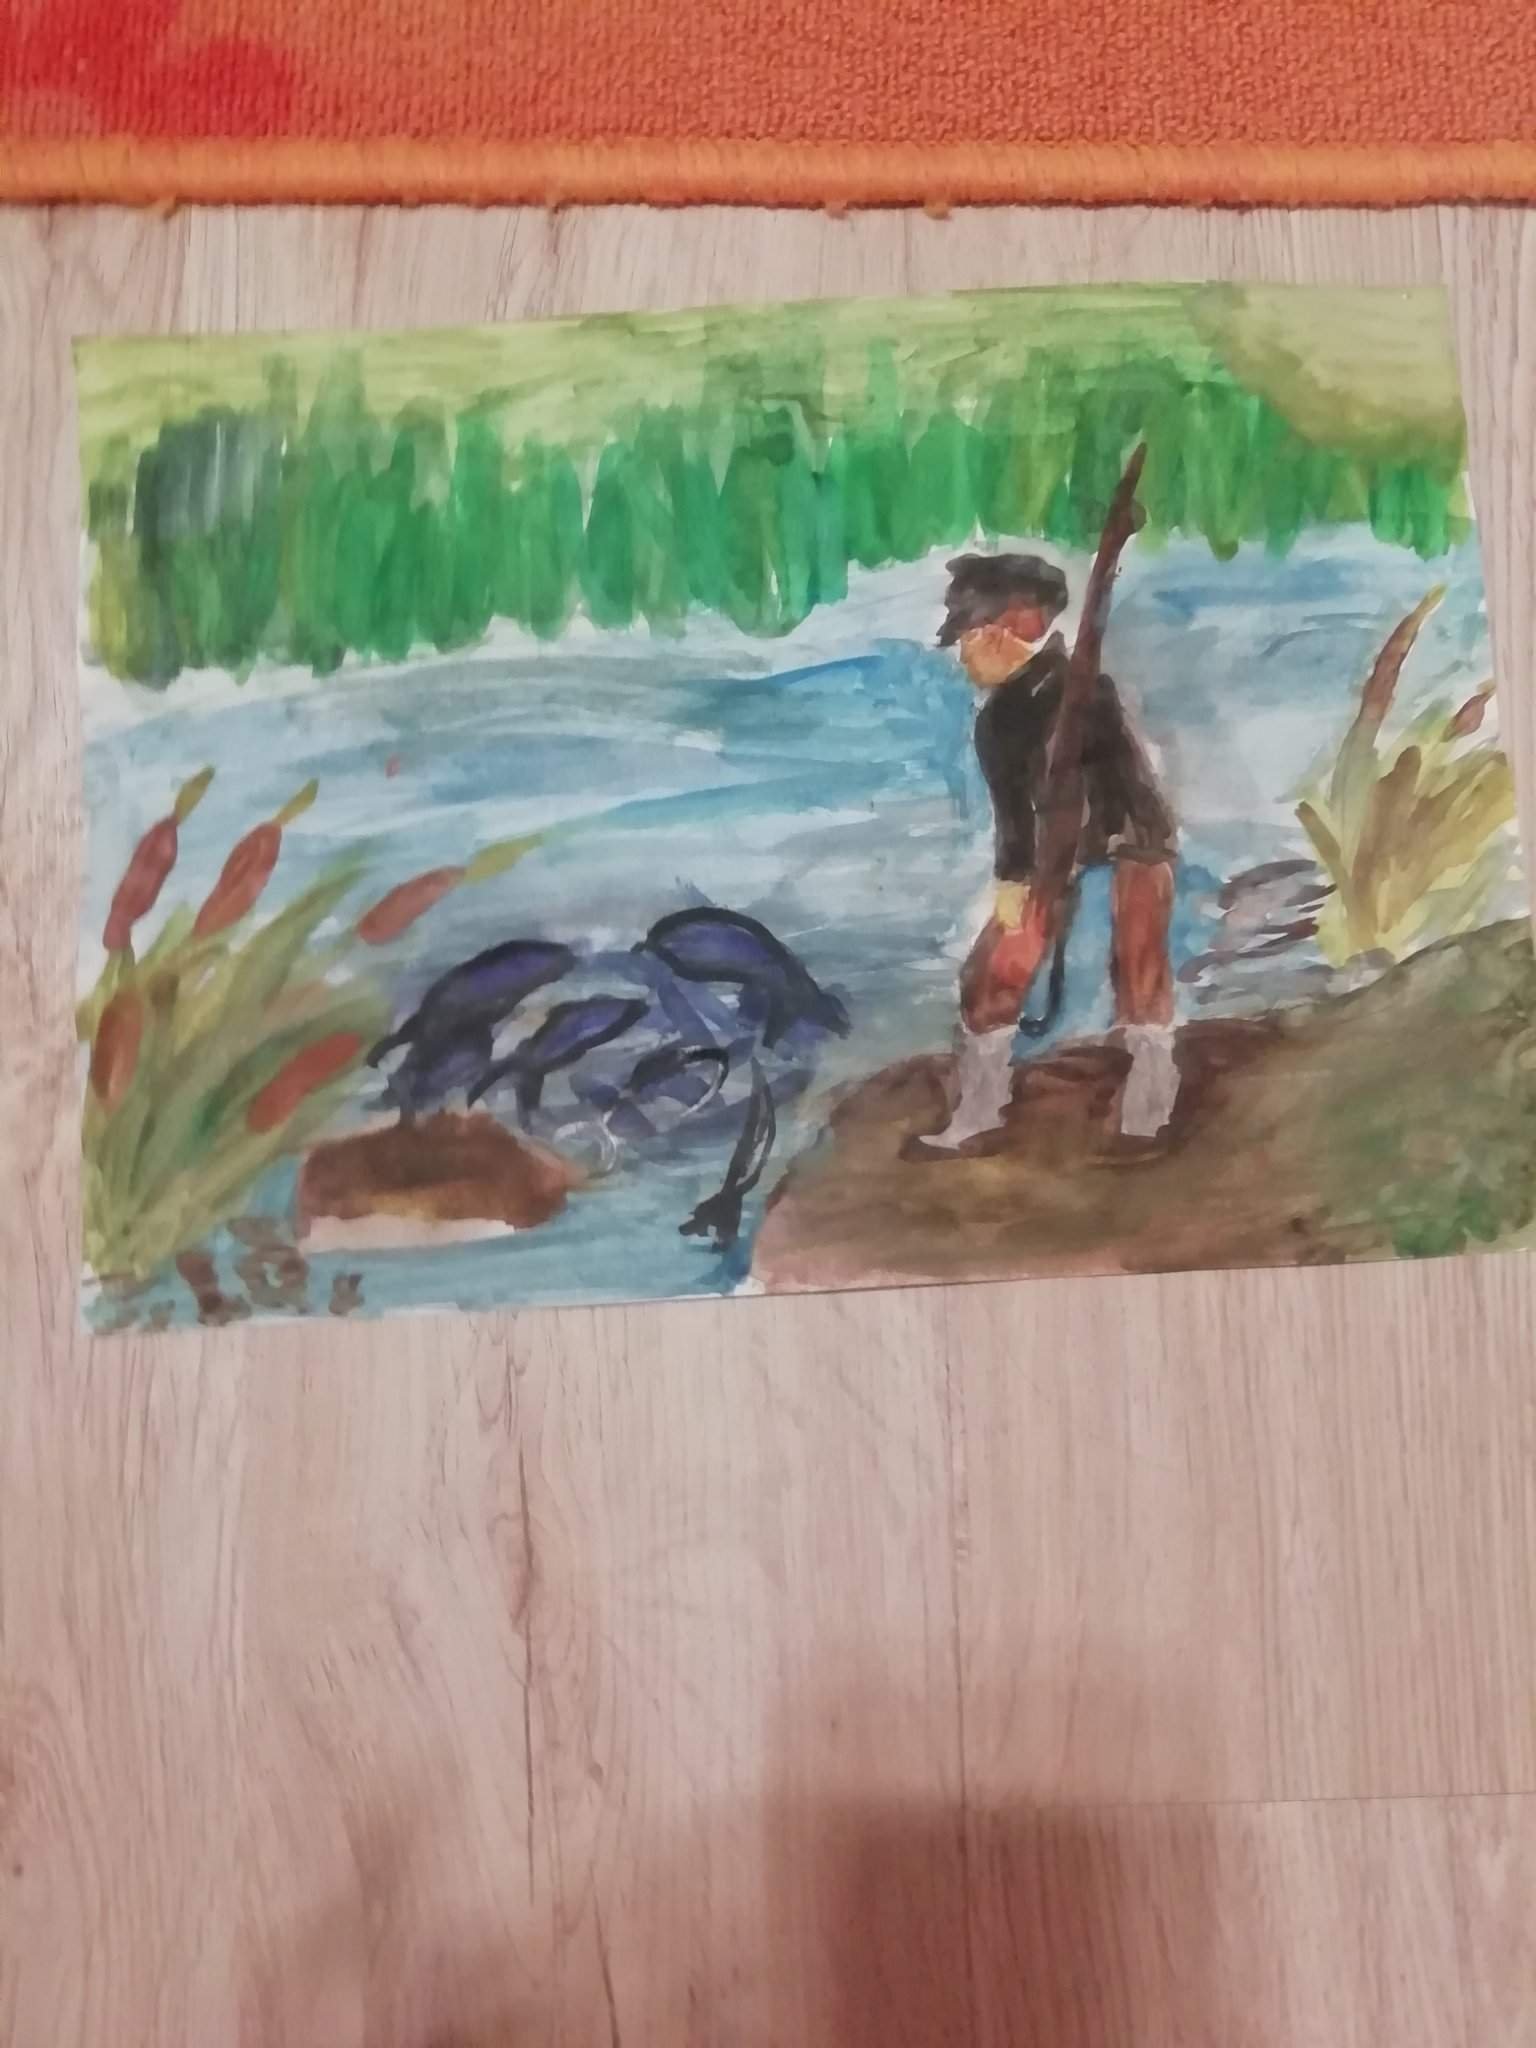 Иллюстрация васюткино озеро 5 класс рисунок. Иллюстрация к произведению Васюткино озеро. Нарисовать иллюстрацию к рассказу Васюткино озеро. Иллюстрация к рассказу Васюткино озеро. Иллюстрация к рассказу "Васюткина озеро.